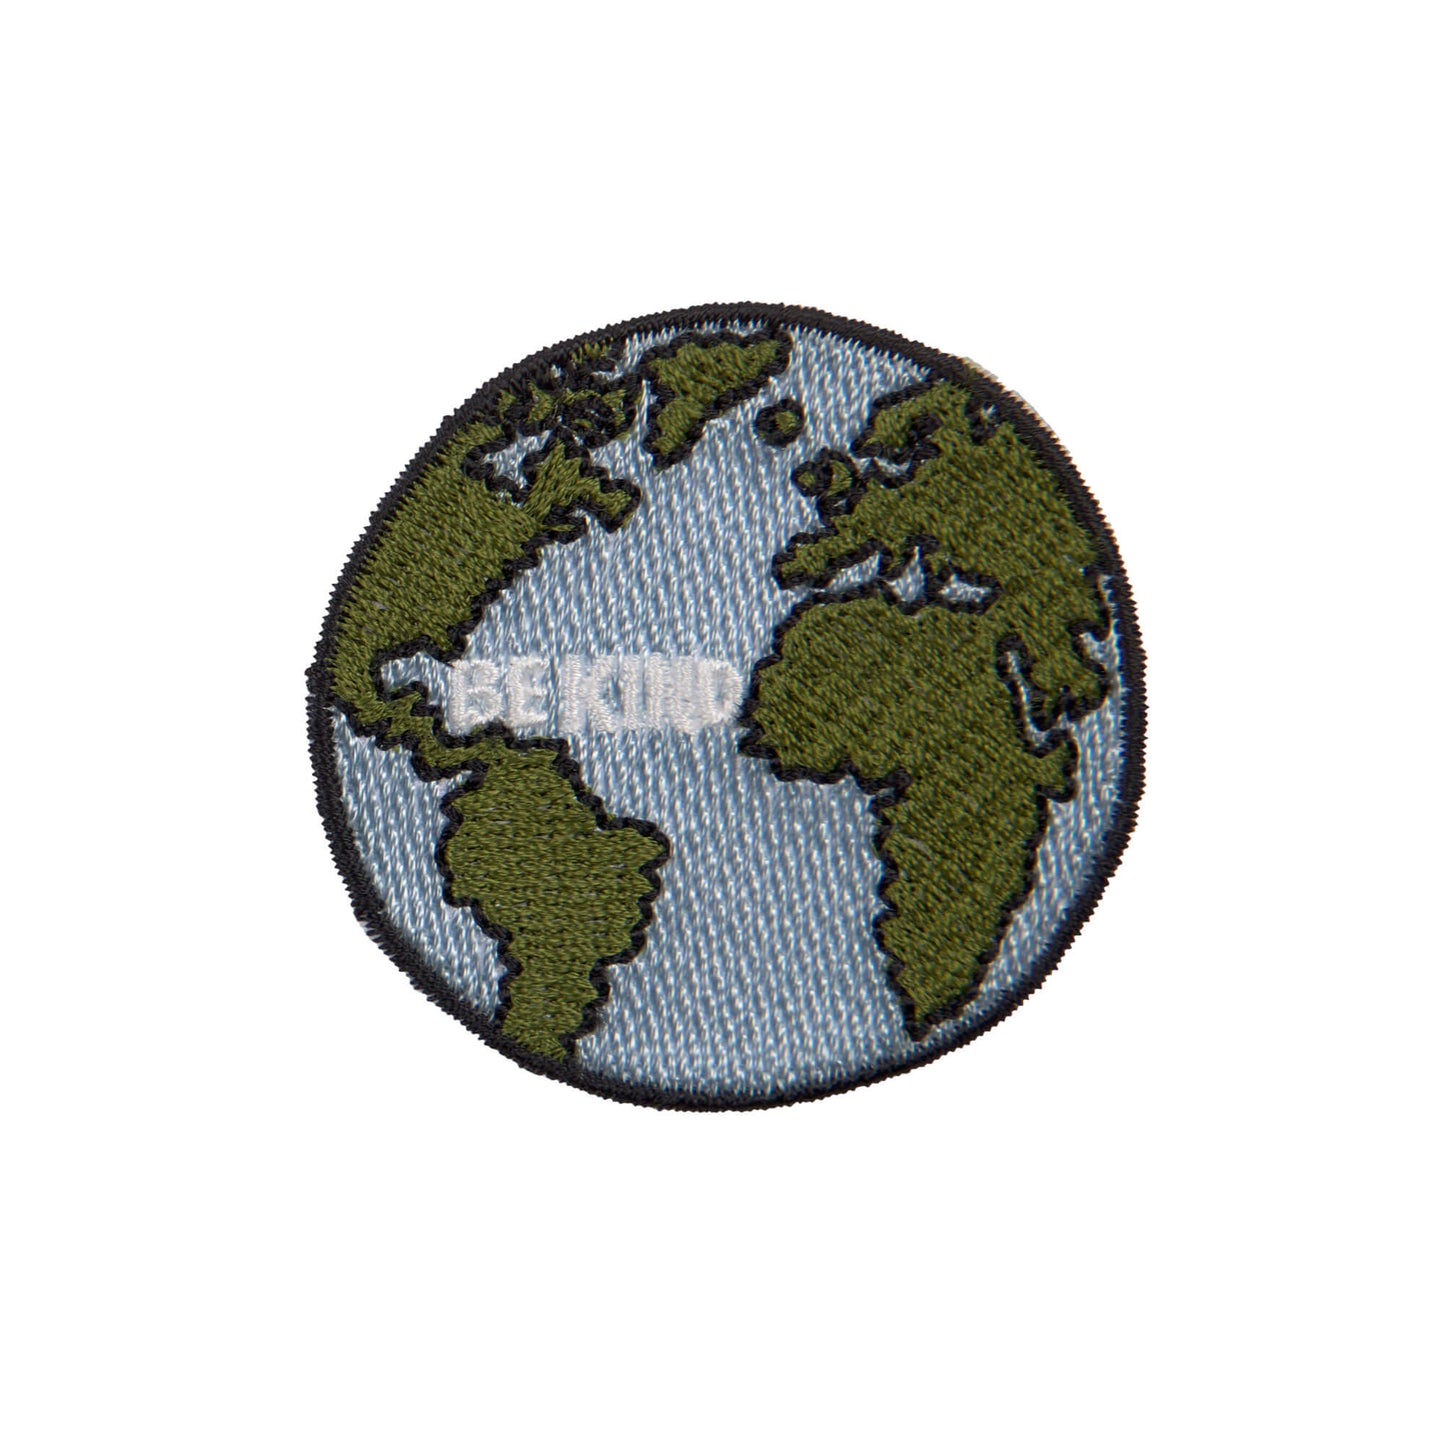 Textil-Sticker (3 Stk) - Schul Set Unique, Weltweit